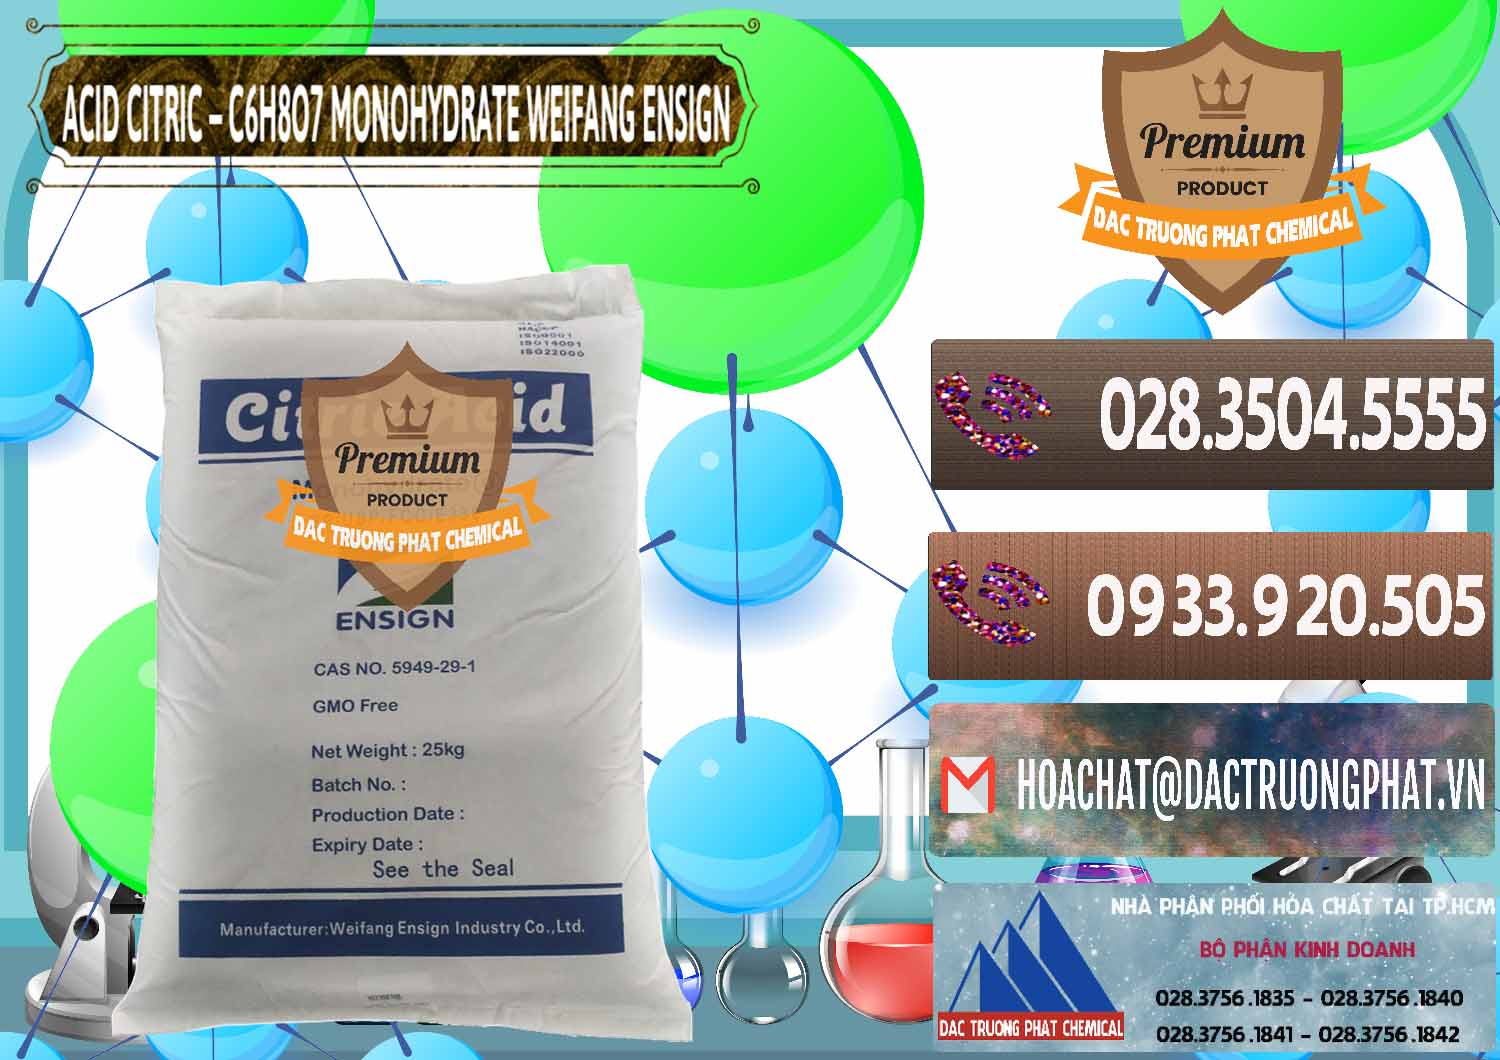 Nơi bán _ cung cấp Acid Citric - Axit Citric Monohydrate Weifang Trung Quốc China - 0009 - Cty cung cấp _ kinh doanh hóa chất tại TP.HCM - hoachatviet.net